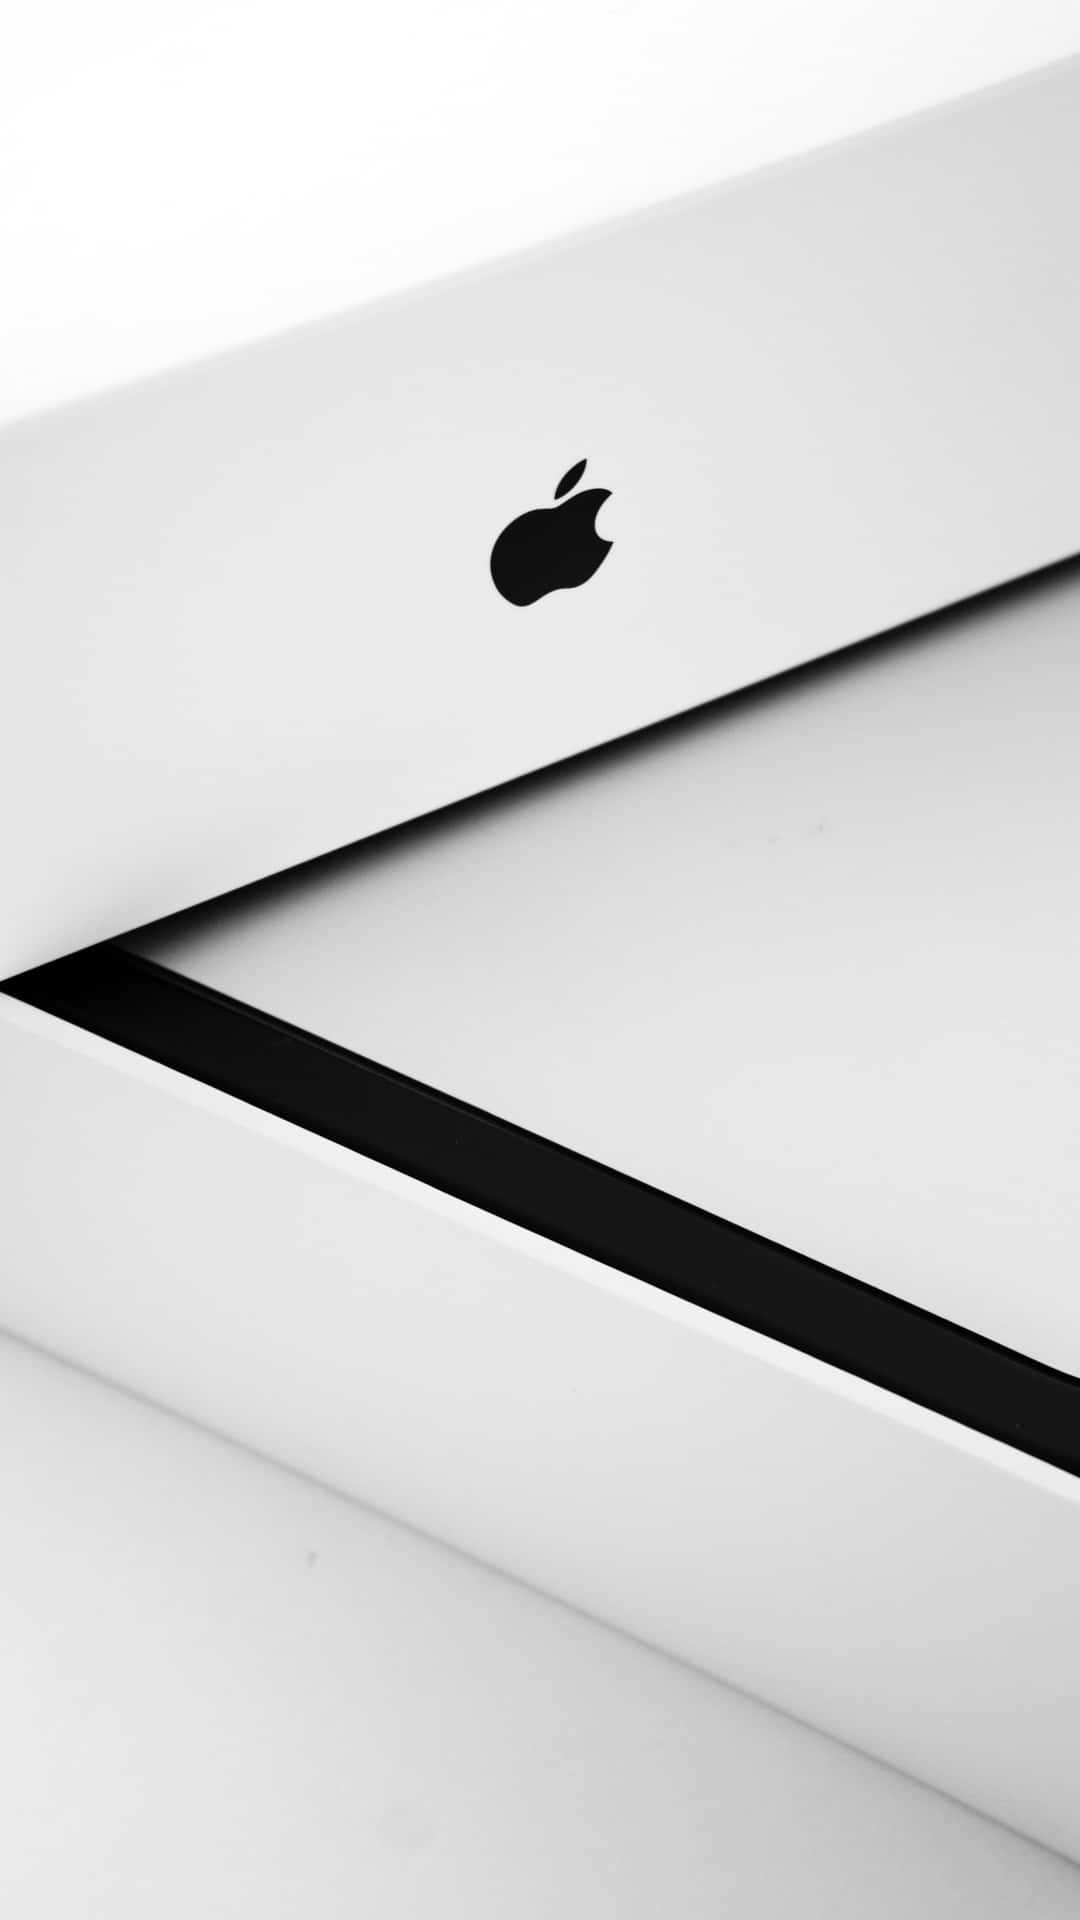 Ologotipo Da Apple Em Um Iphone X. Papel de Parede